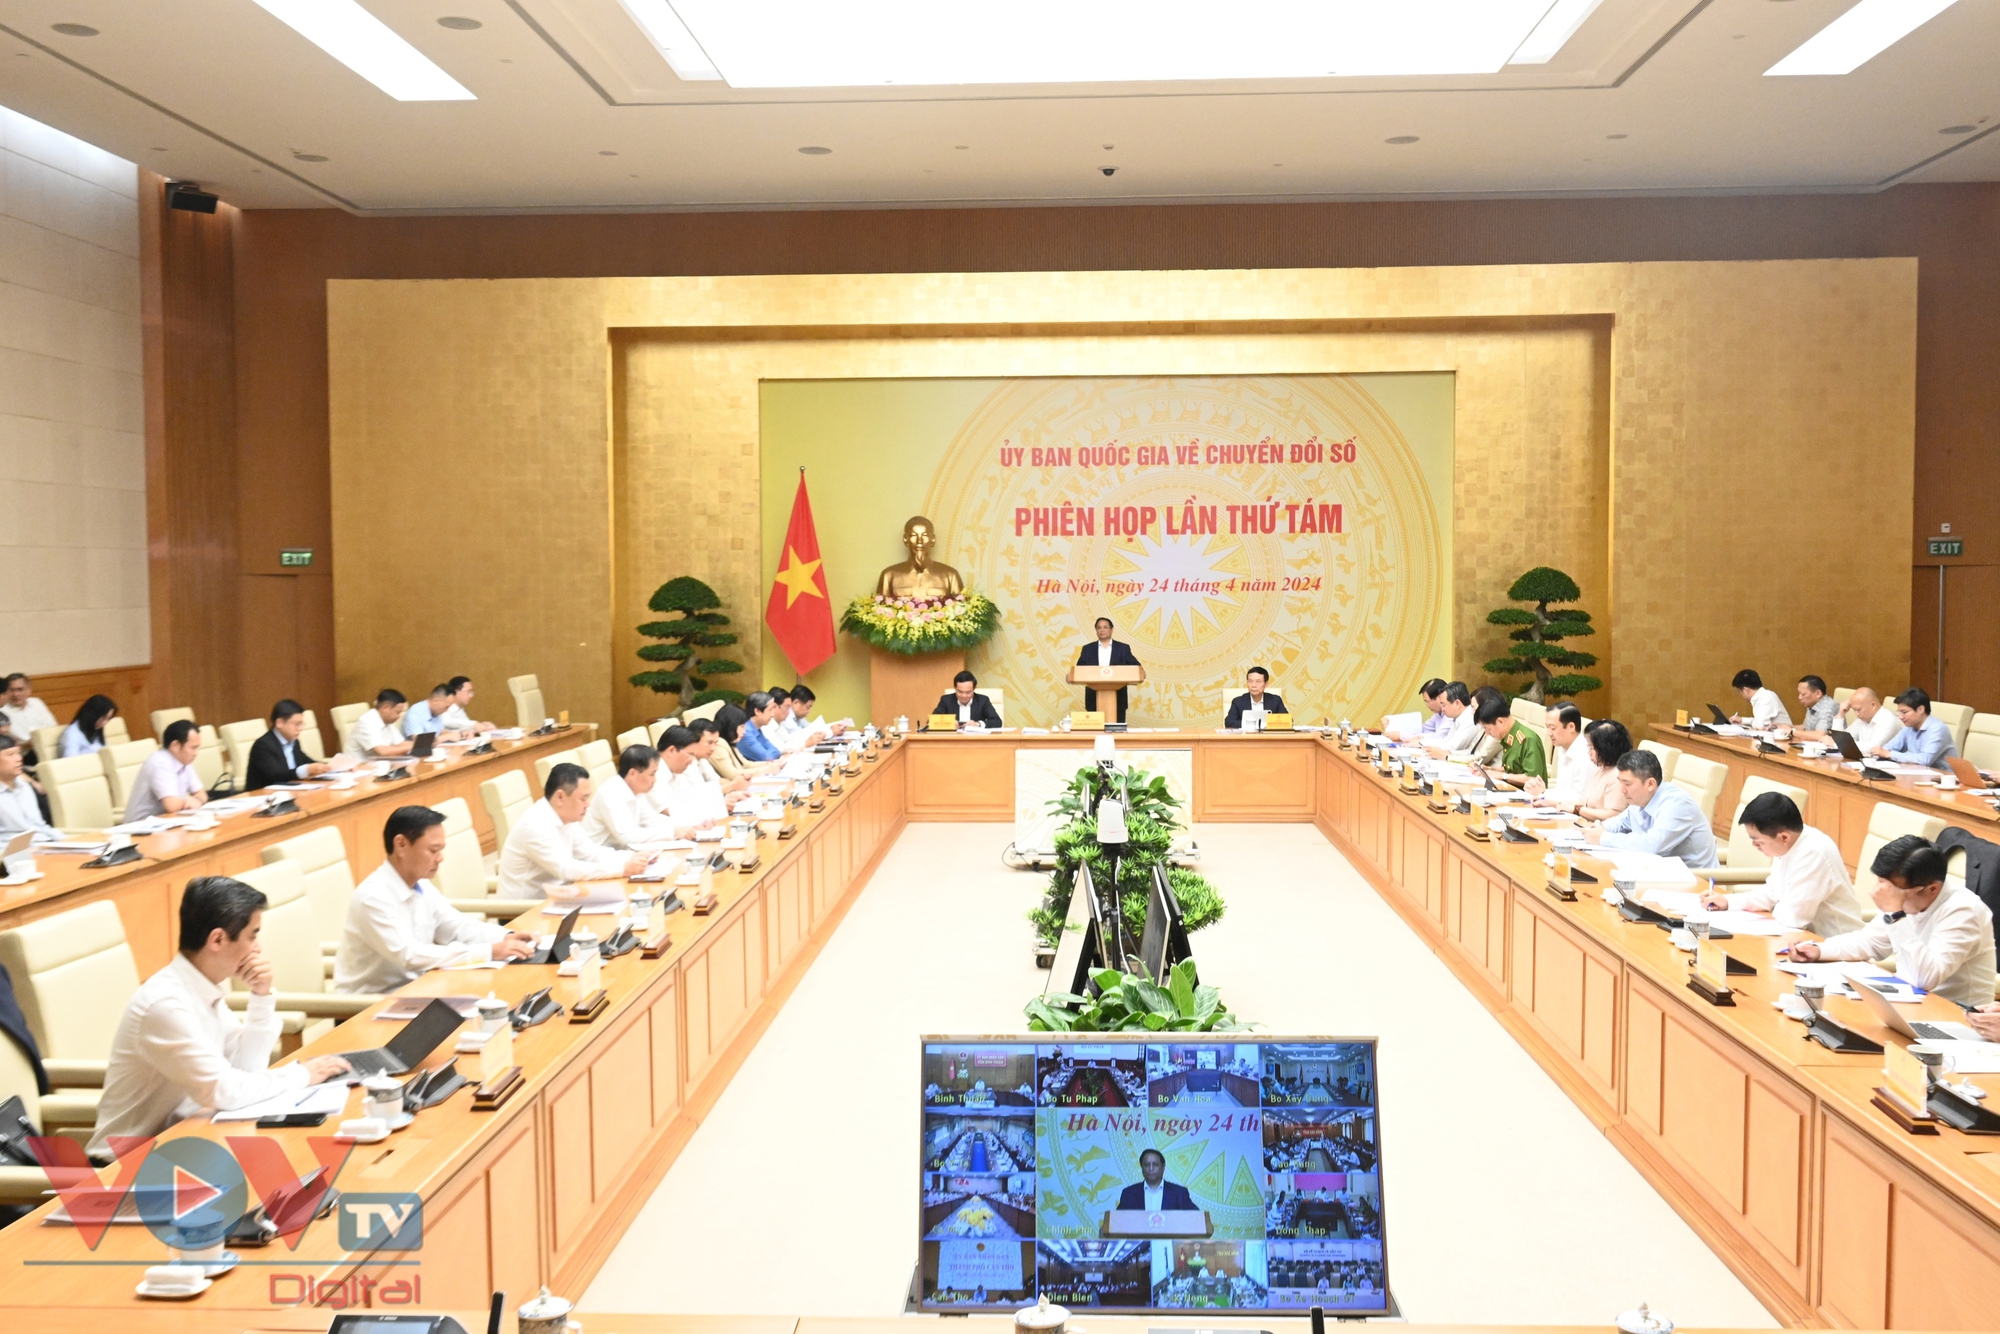 Thủ tướng Phạm Minh Chính chủ trì Phiên họp lần thứ 8 của Ủy ban Quốc gia về chuyển đổi số- Ảnh 1.